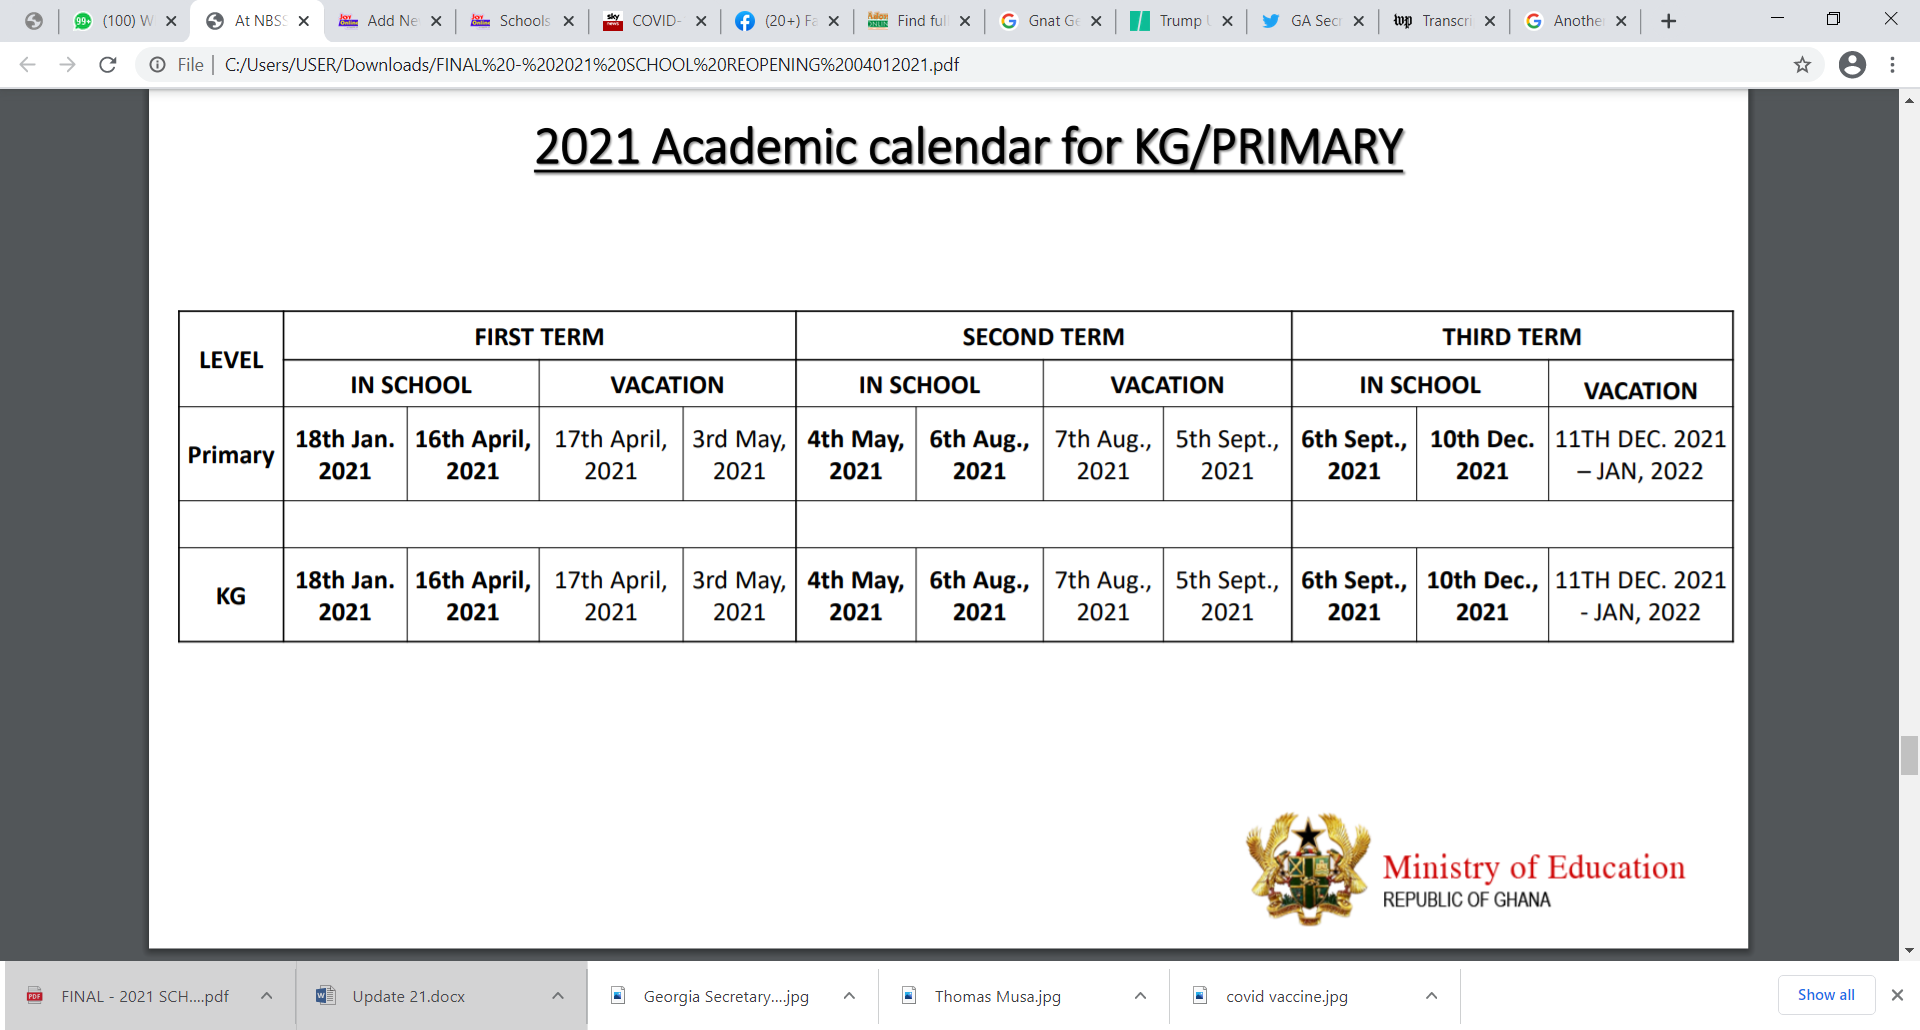 Full details of 2020/21 academic calendar for Kindergarten, Primary